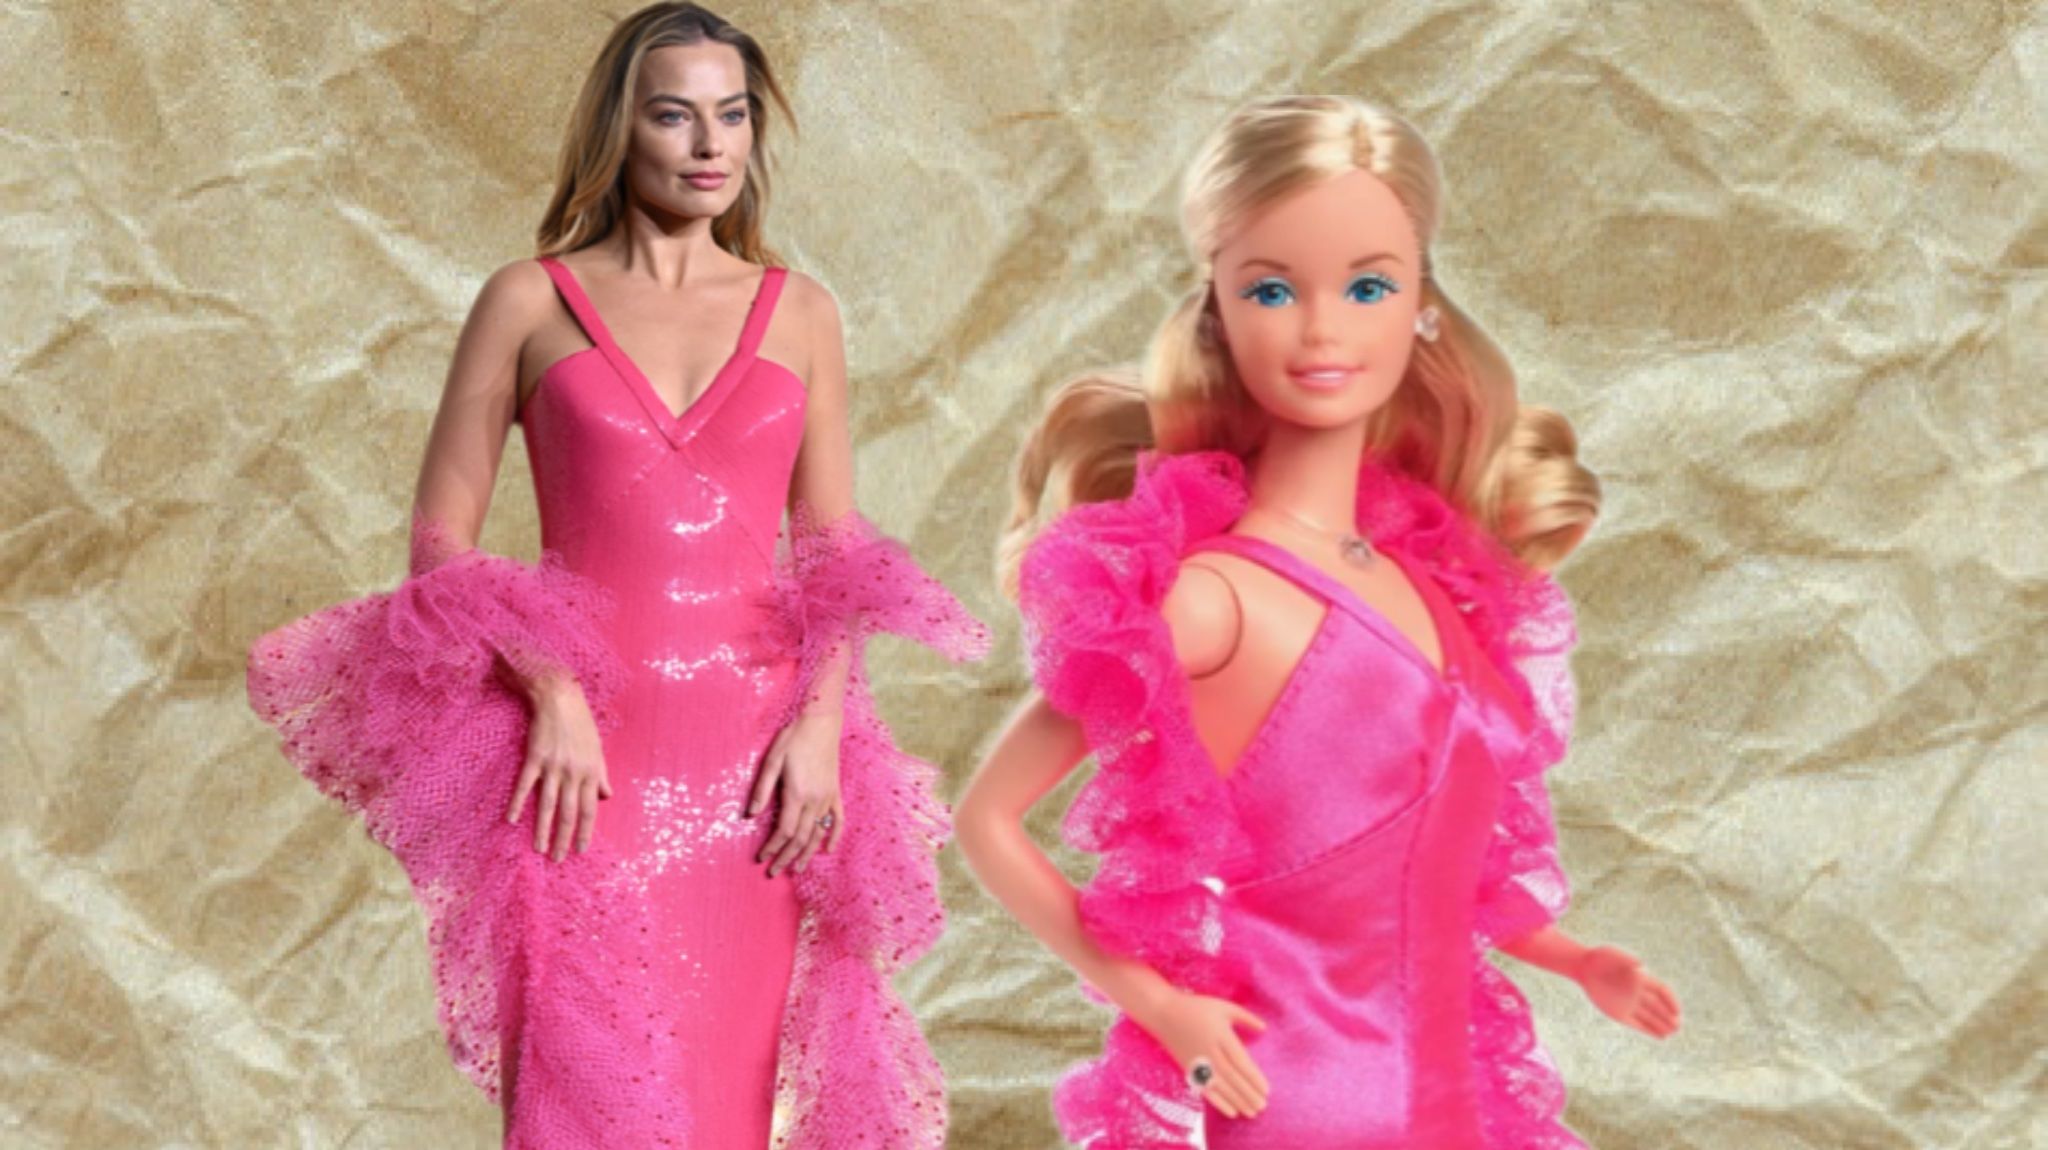 Марго Робби в образе культовой куклы Барби